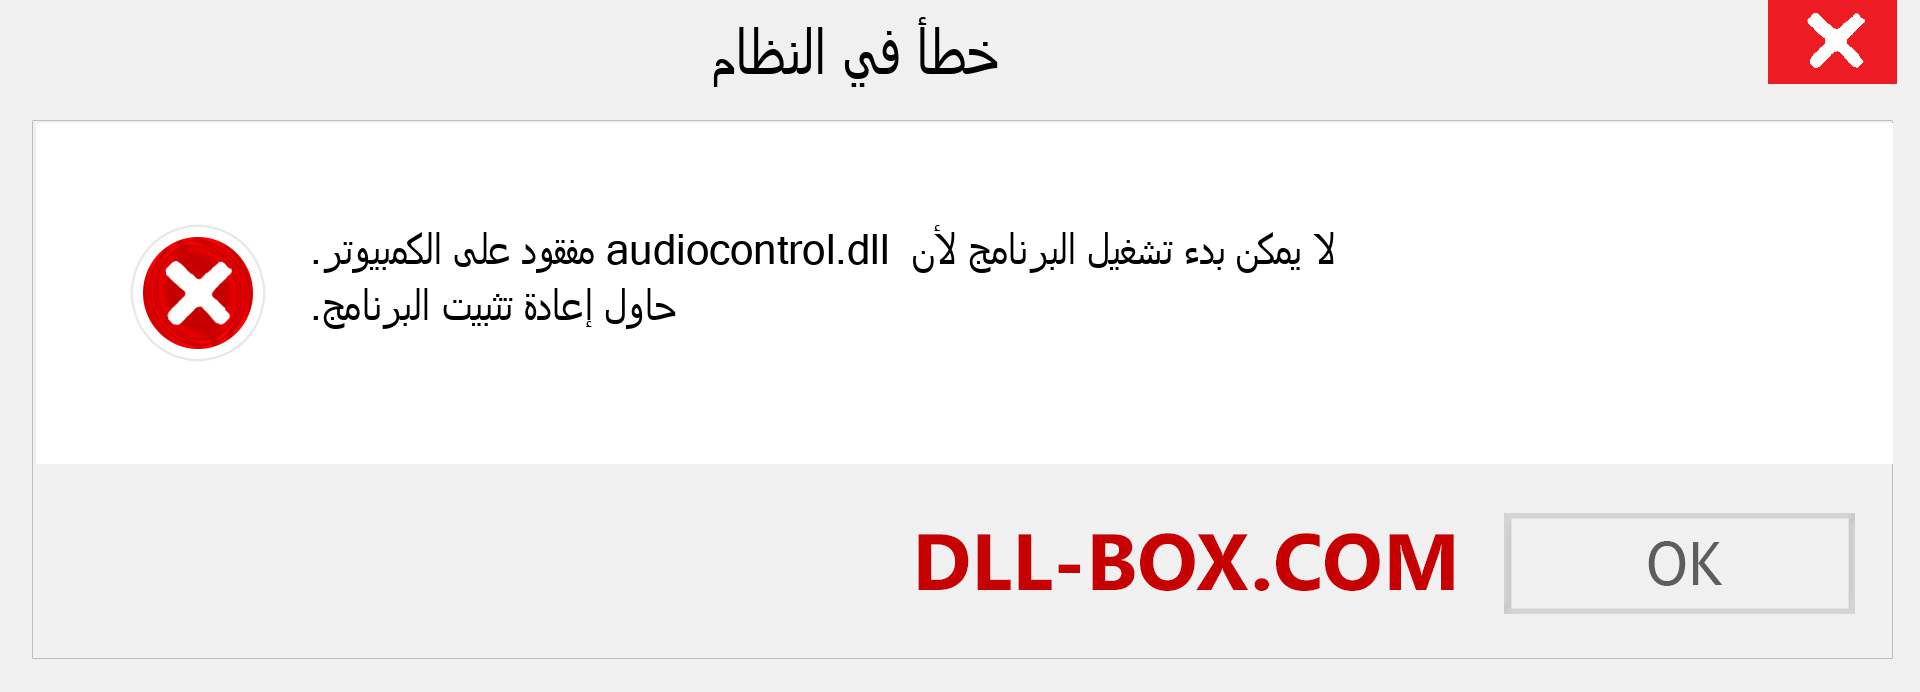 ملف audiocontrol.dll مفقود ؟. التنزيل لنظام التشغيل Windows 7 و 8 و 10 - إصلاح خطأ audiocontrol dll المفقود على Windows والصور والصور